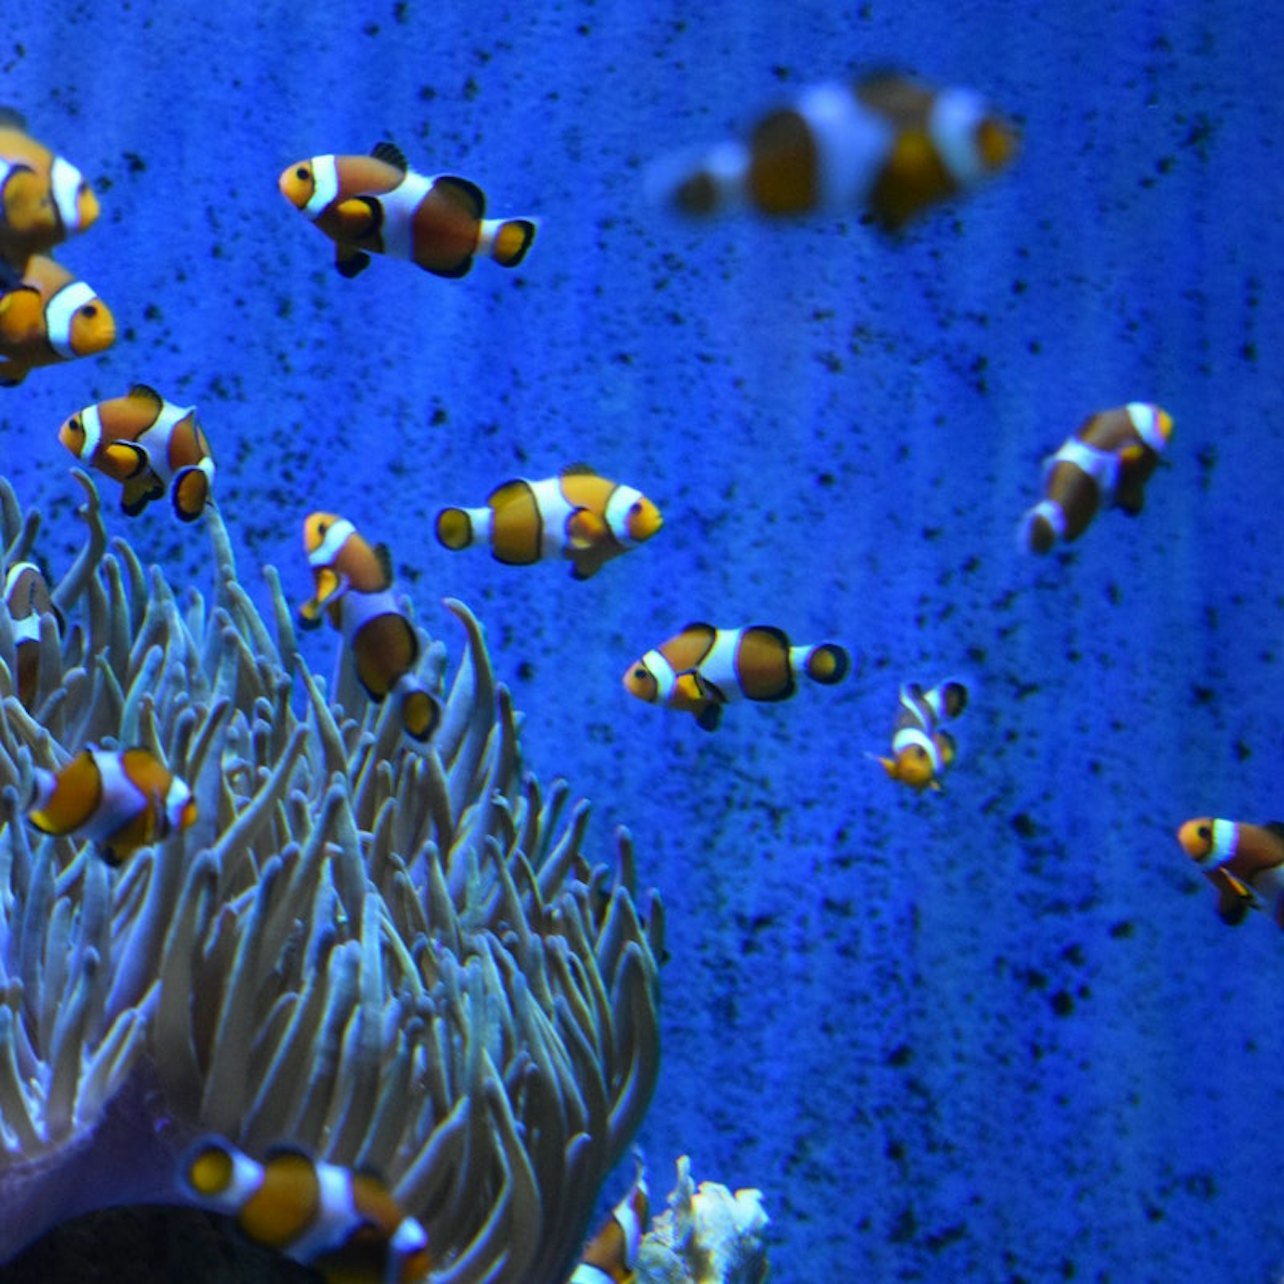 L'Aquarium de Barcelona: Flexi-ticket - Accommodations in Barcelona